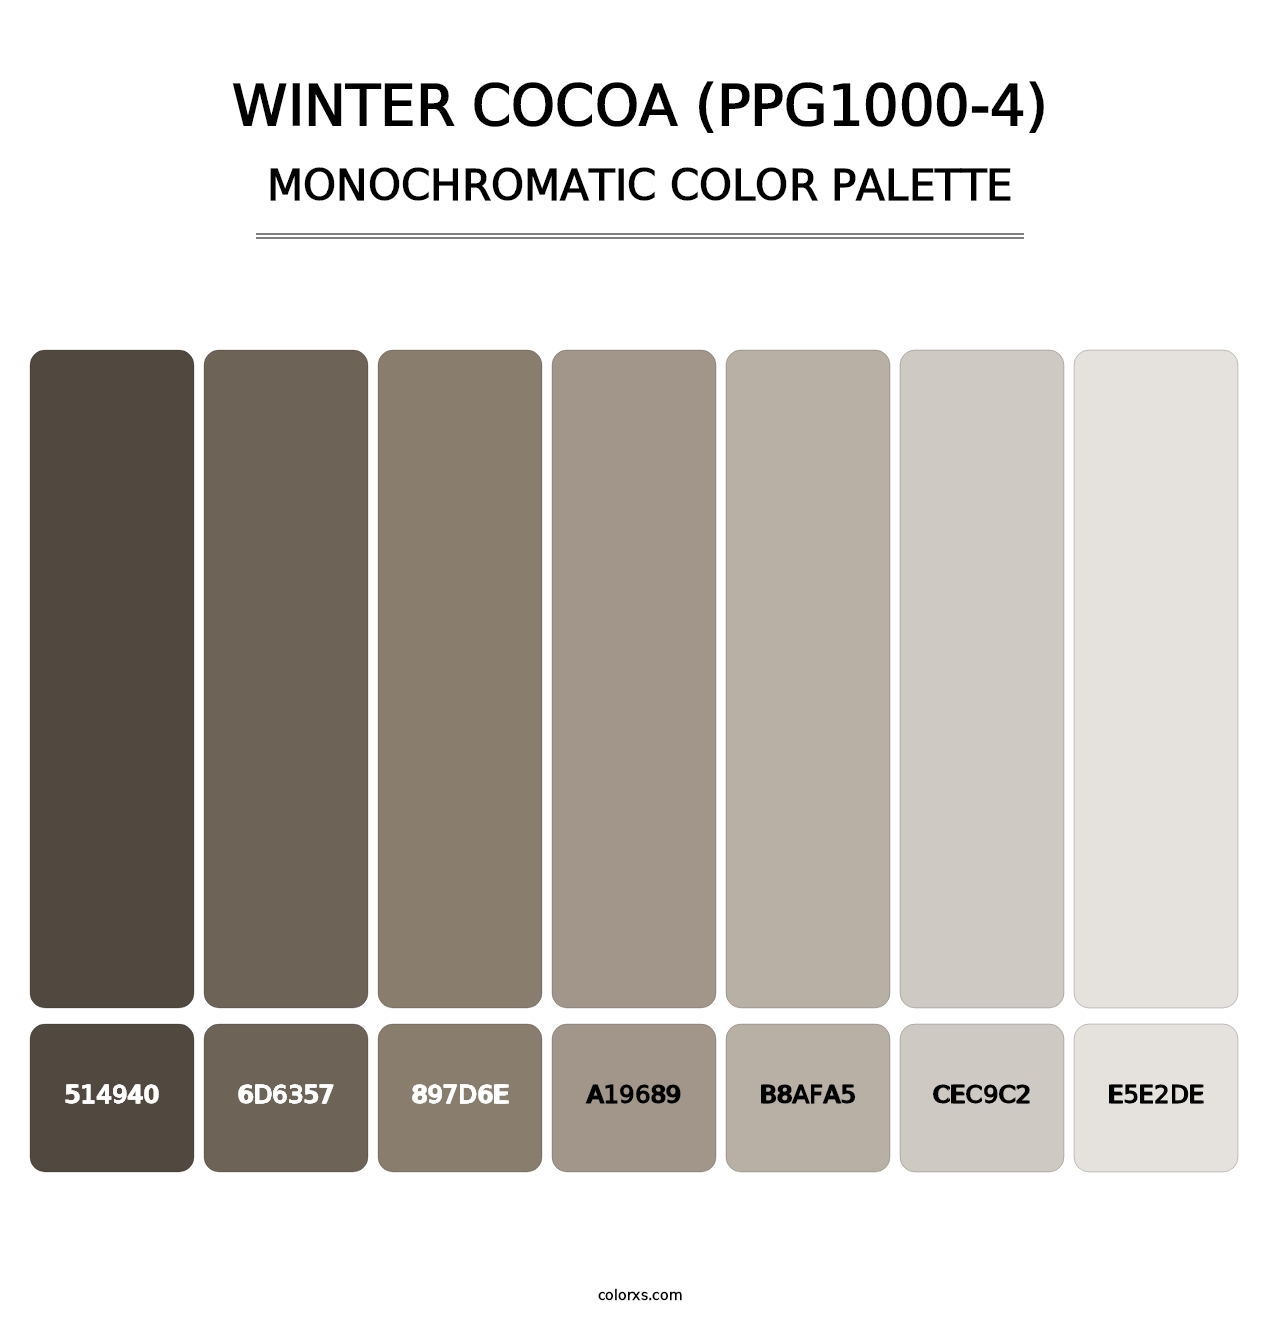 Winter Cocoa (PPG1000-4) - Monochromatic Color Palette